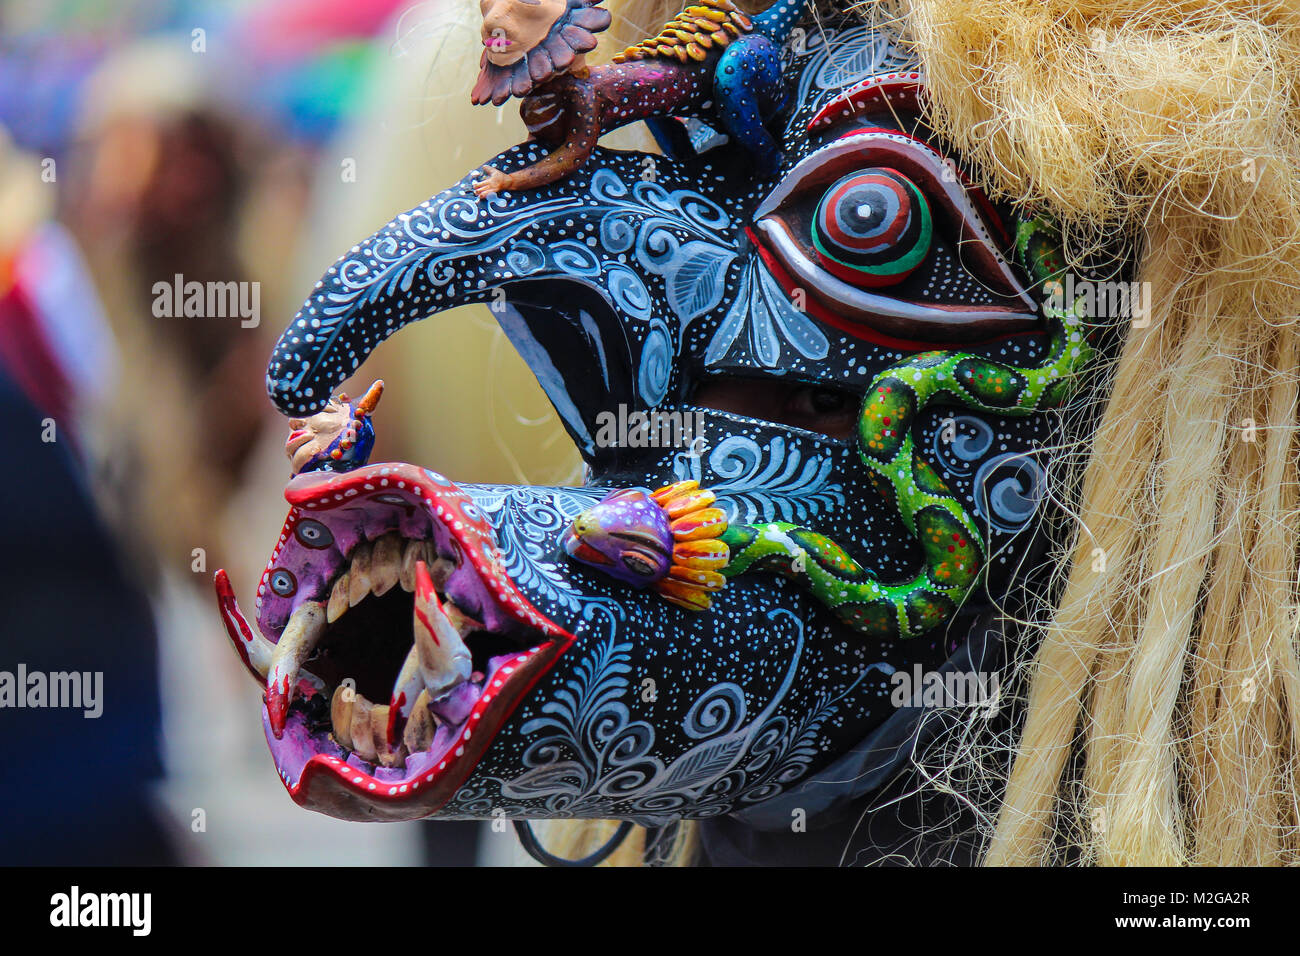 Terrifiant et monstrueux de masque noir et bleu 'Warrior' tastoan avec de nombreux détails peints à la main d'un carnaval traditionnel Mexicain Banque D'Images